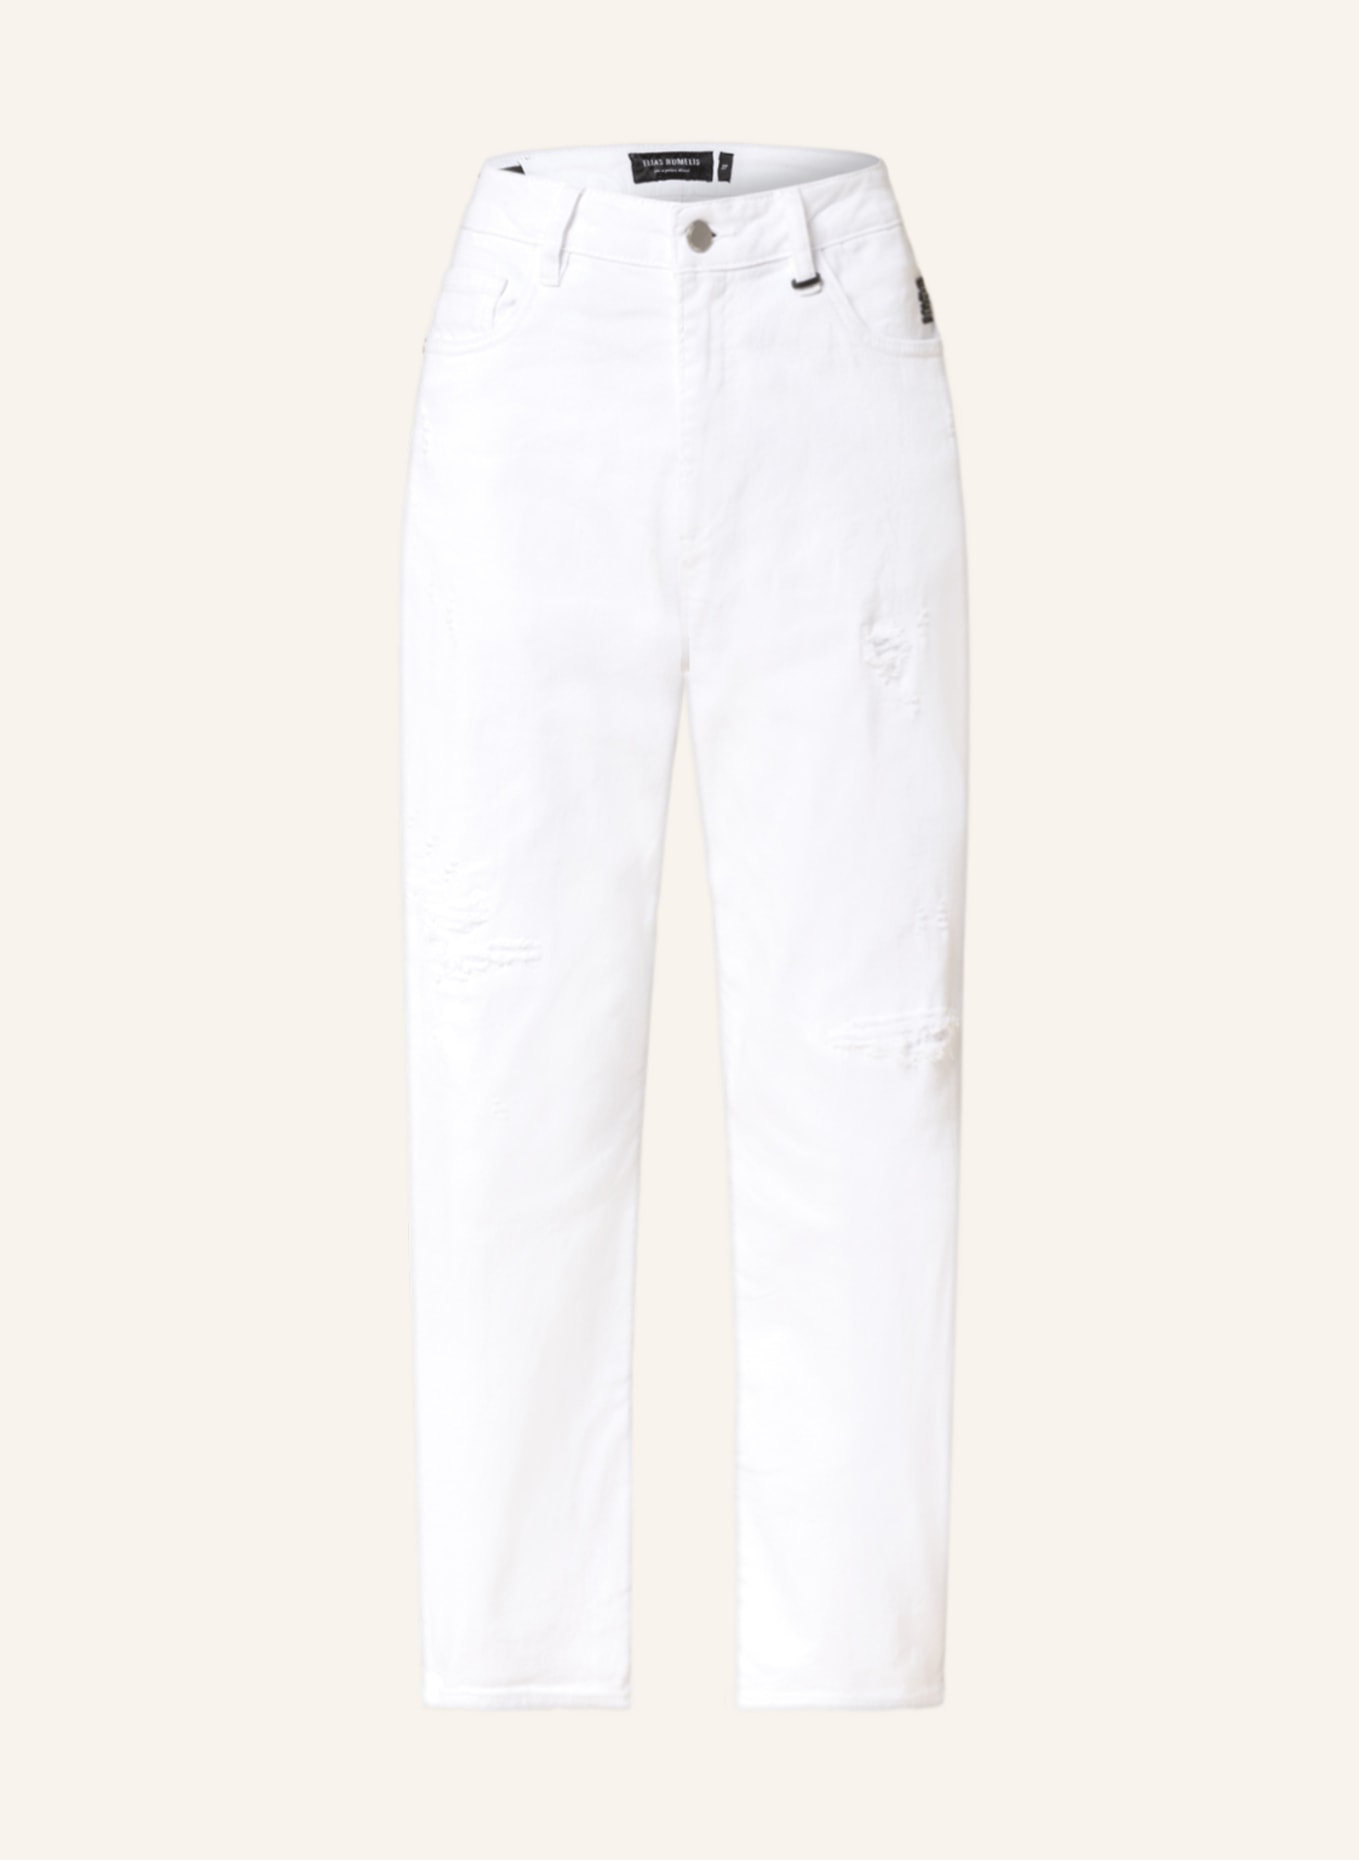 ELIAS RUMELIS 7/8-Jeans YOANA, Farbe: 65 WHITE (Bild 1)